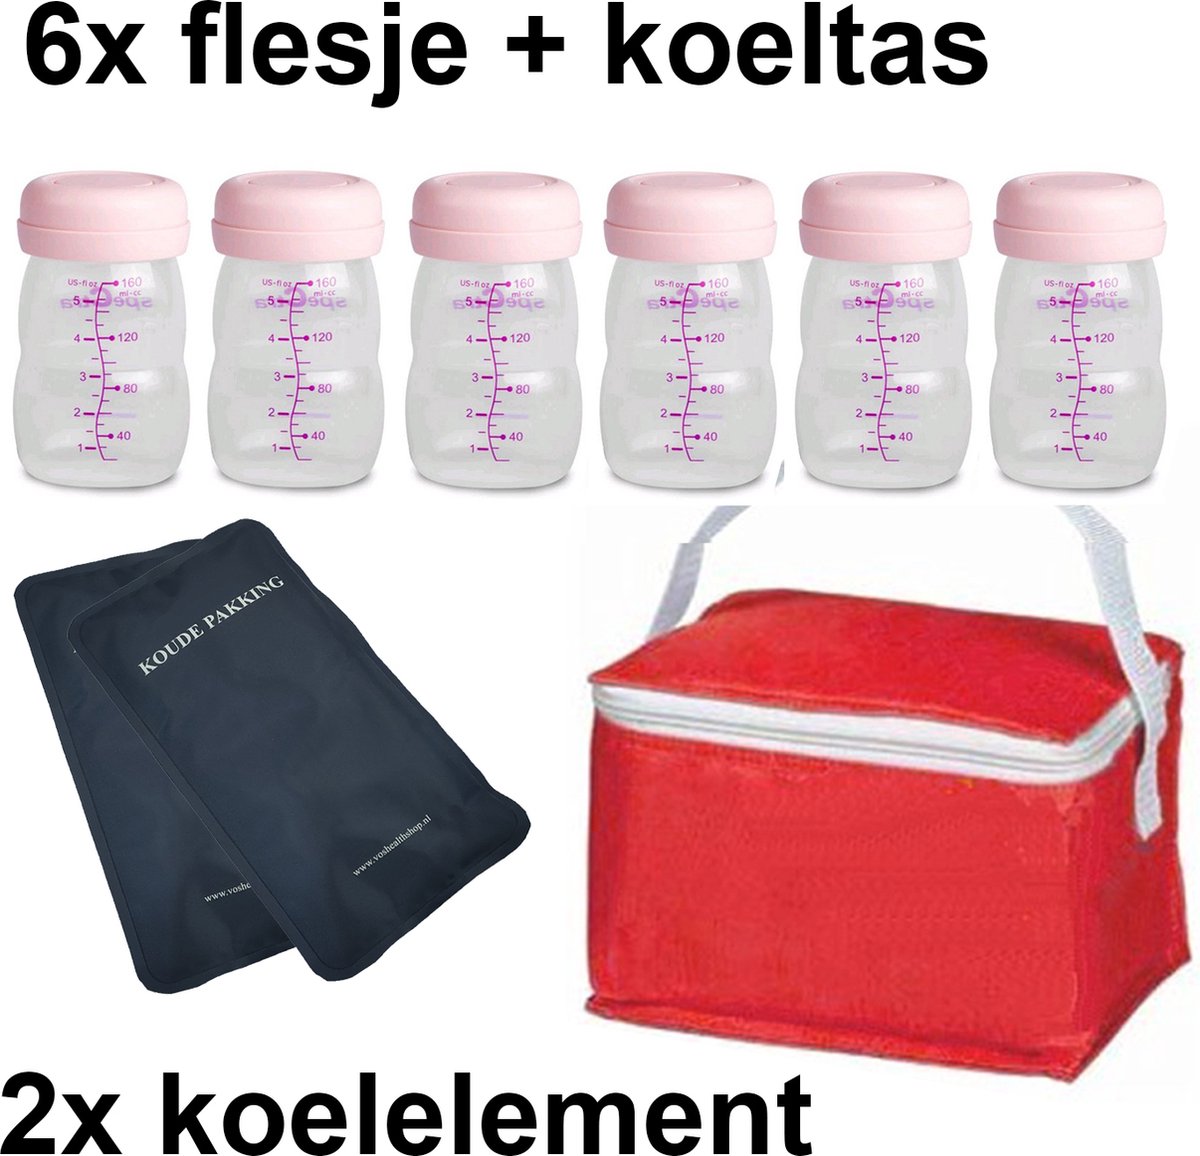 Moedermelk flesjes - 6 x 160ml - met rood koeltasje en koelelementen - borstvoeding flesjes - BPA vrij